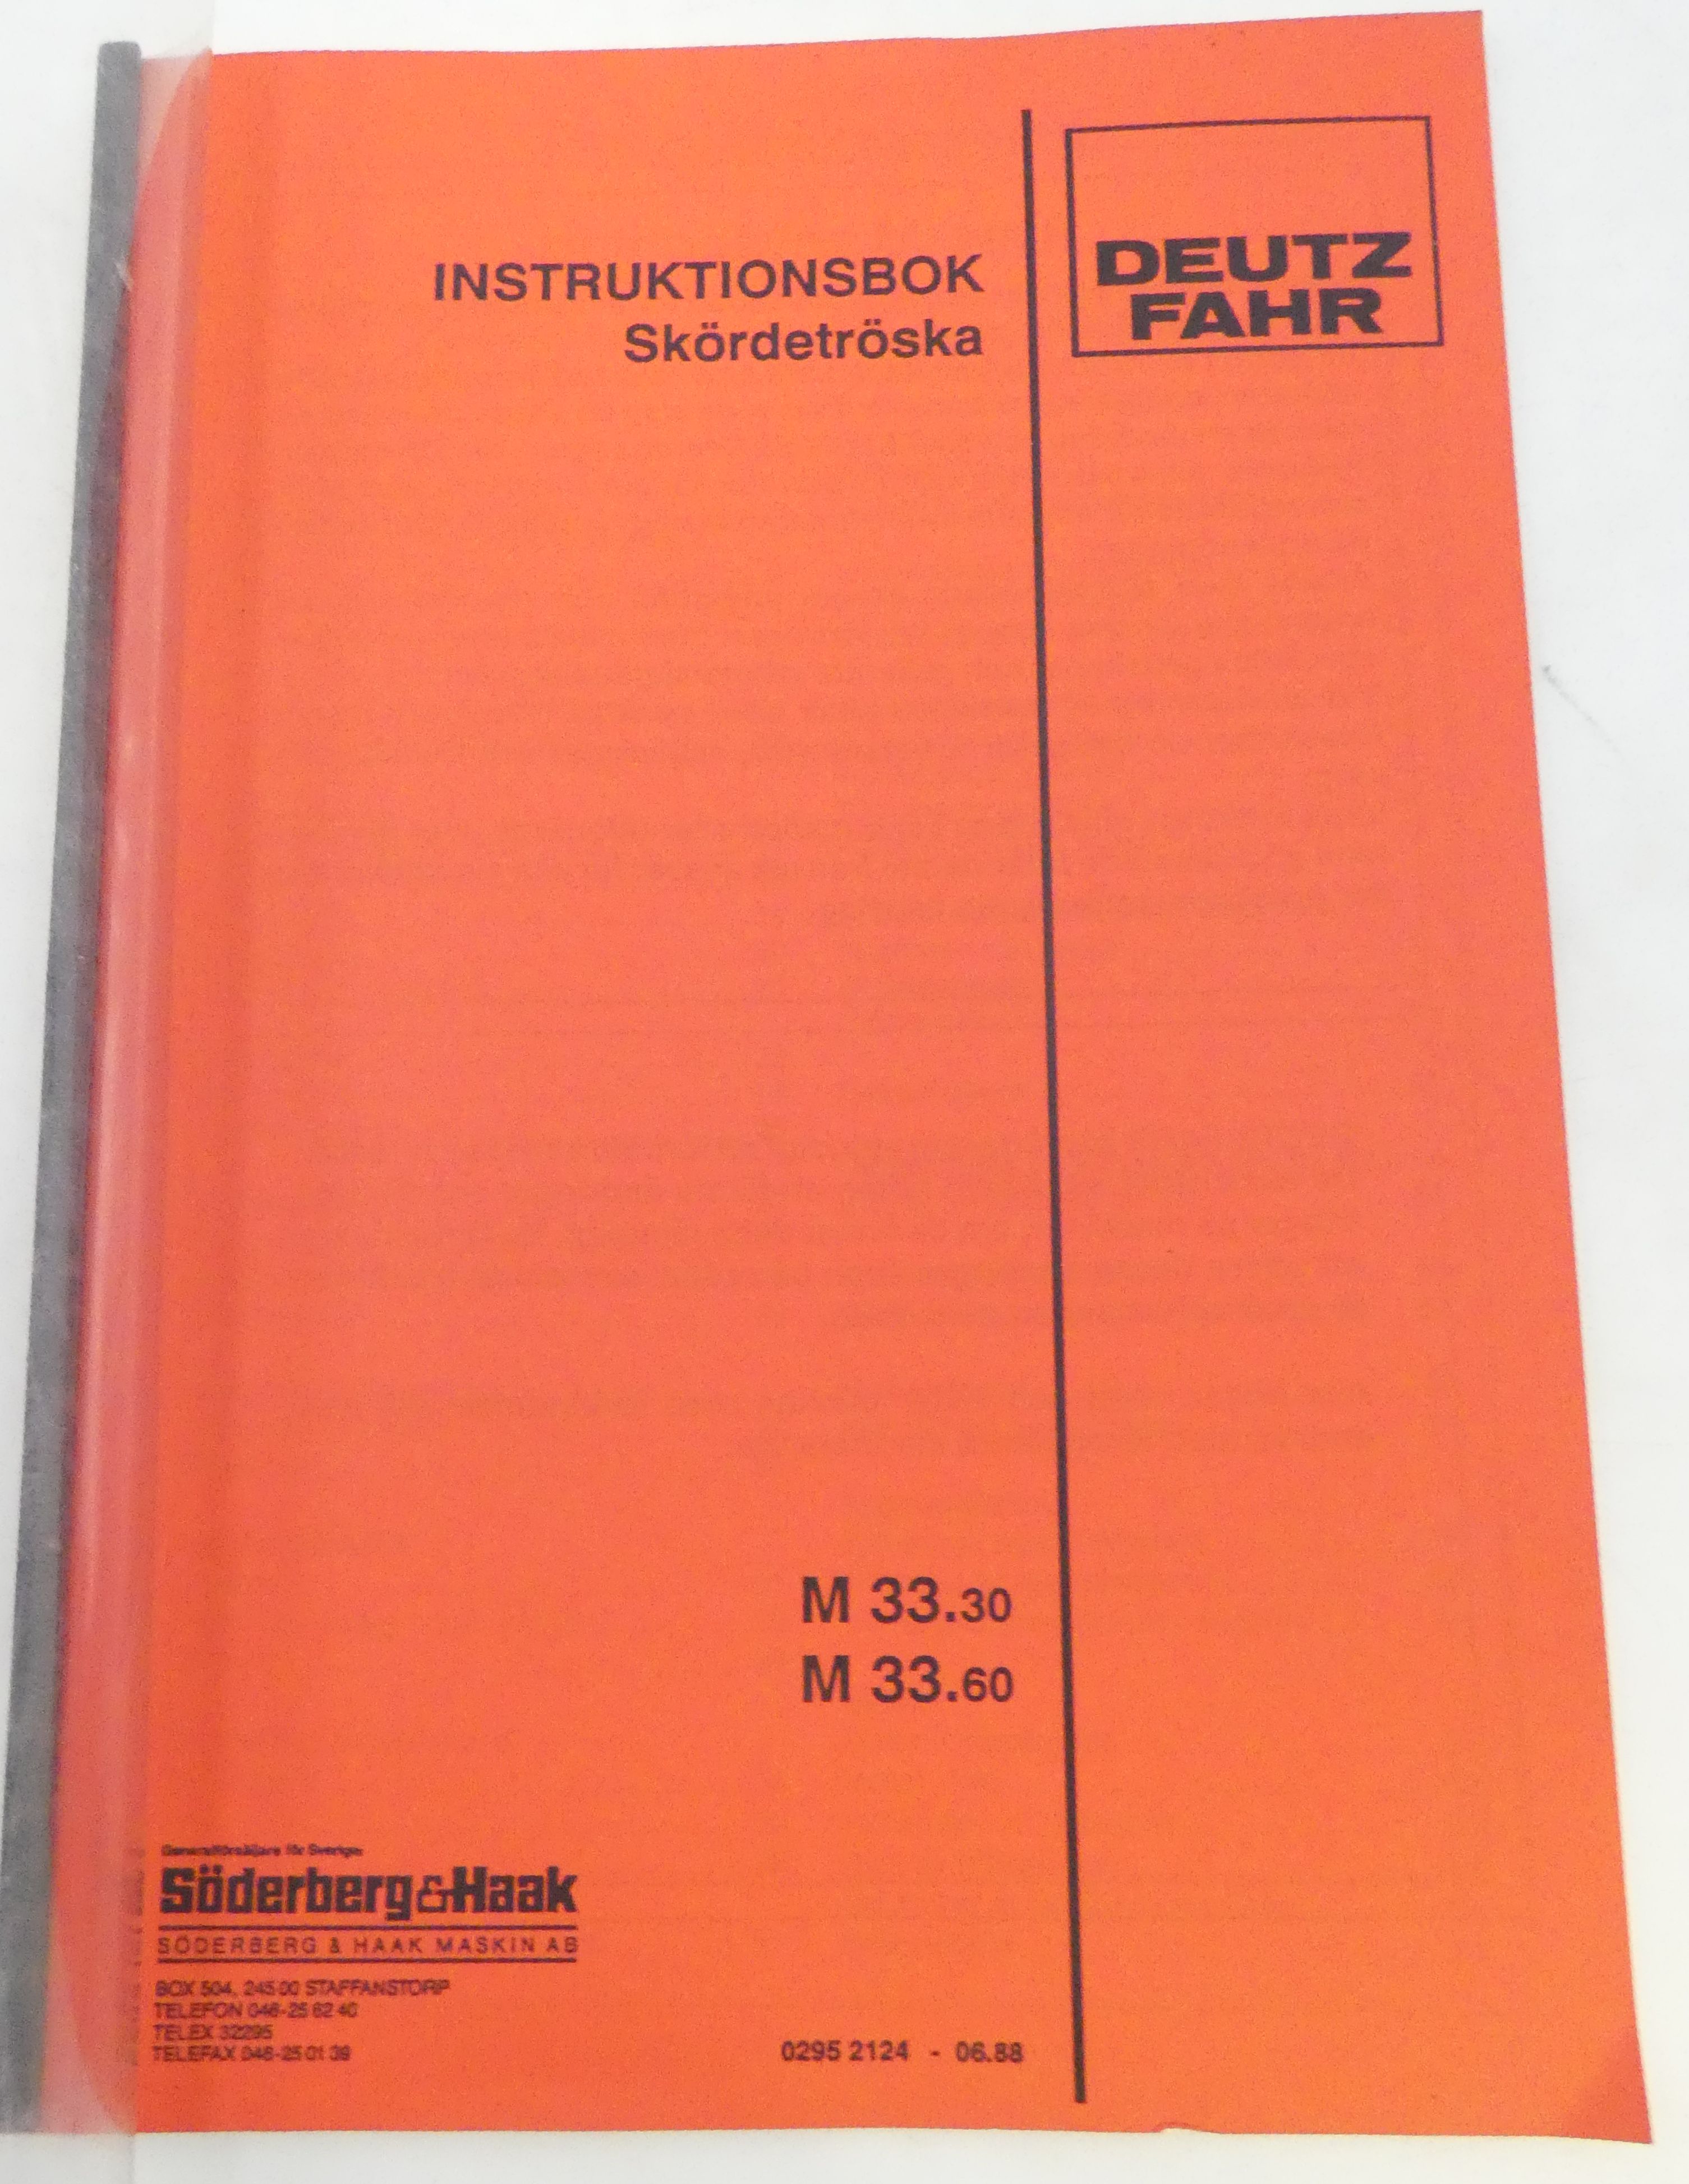 Deutz-Fahr M33.30, M33.60 skördetröska instruktionsbok